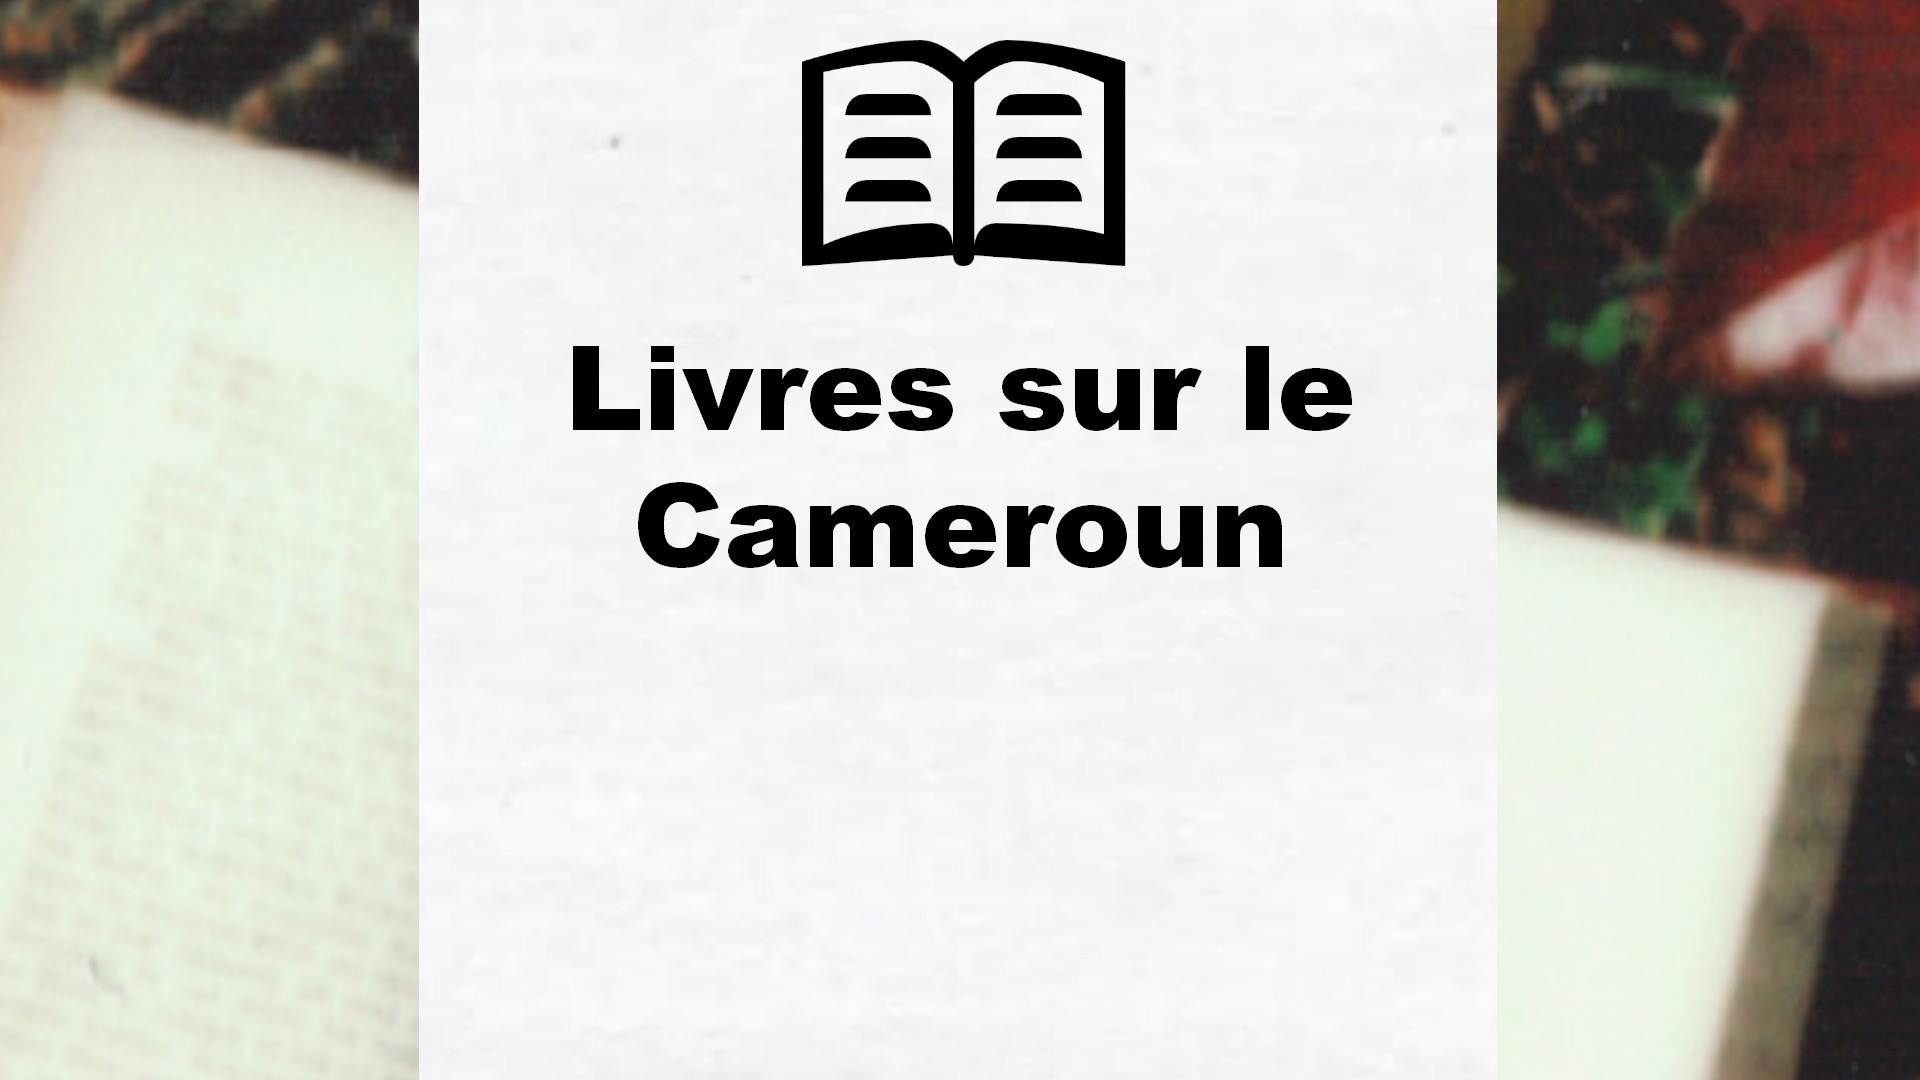 Livres sur le Cameroun